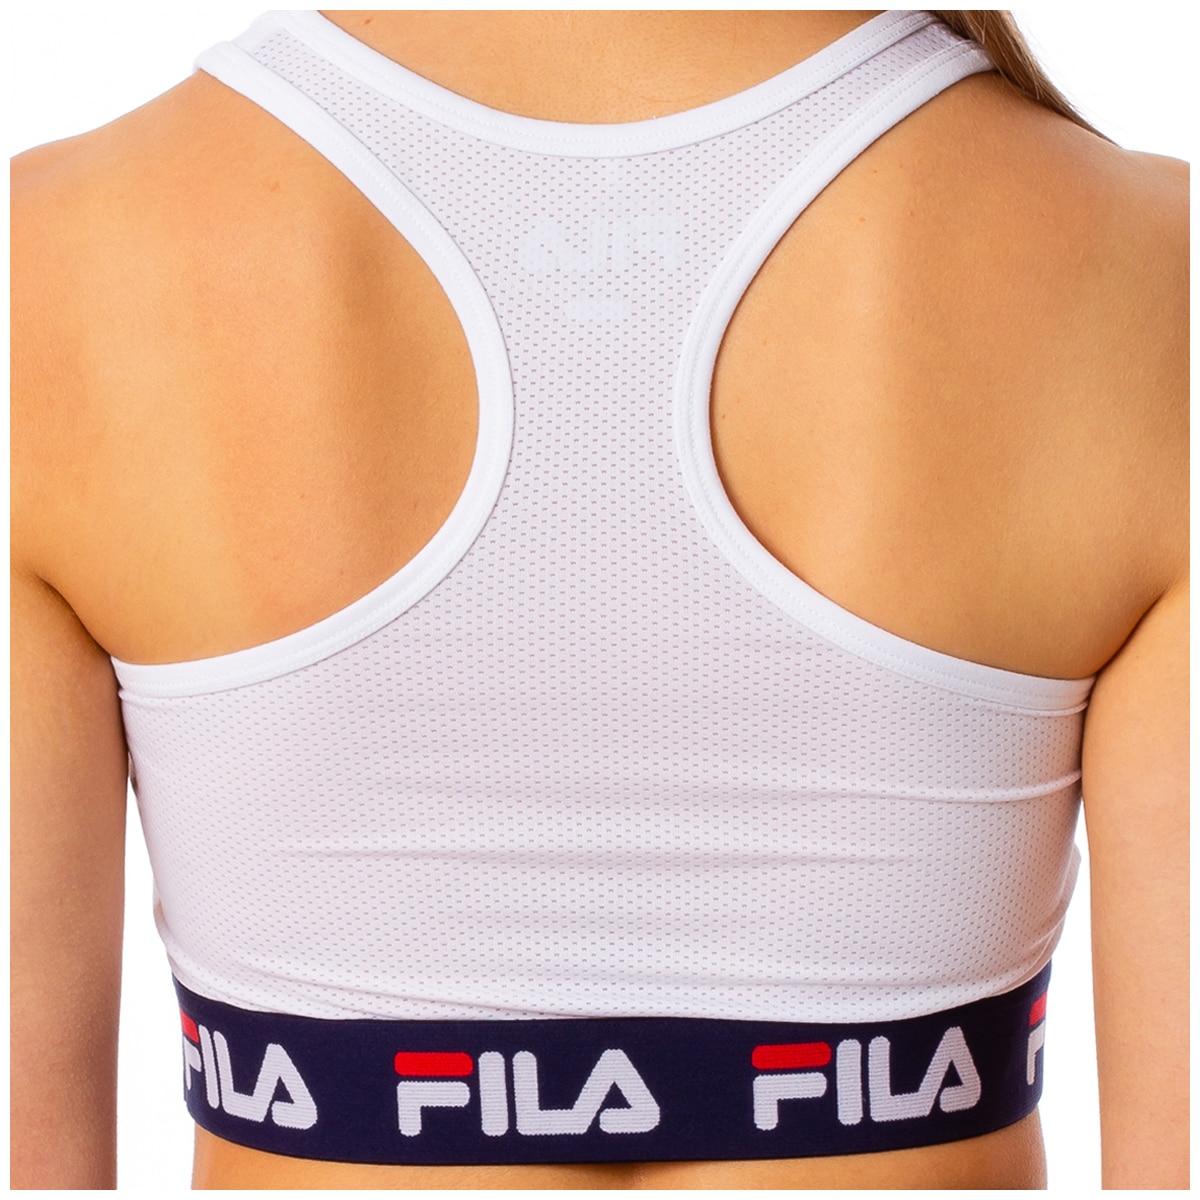 Fila Women's Sports Bra - White